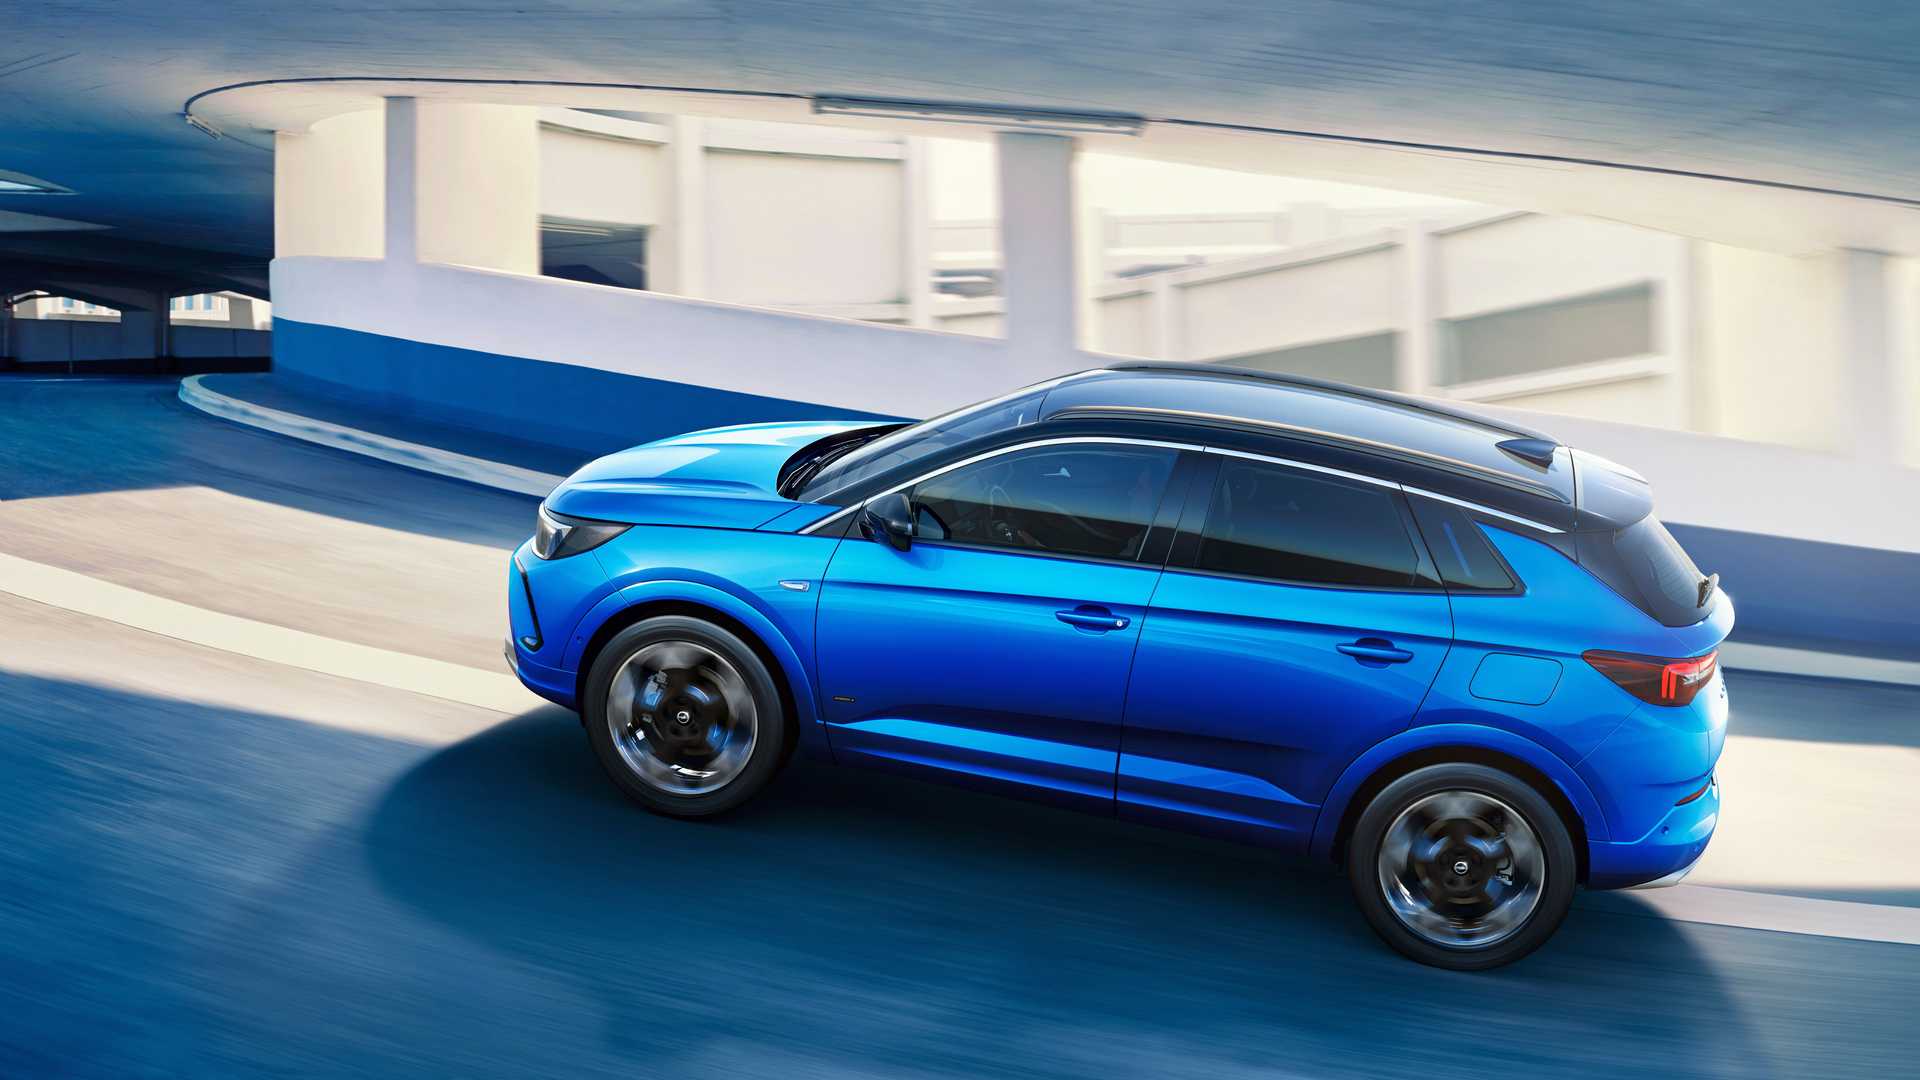 نمای جانبی فیس لیفت کراس اور اوپل گرندلند 2022 / 2022 Opel Grandland crossover آبی رنگ در جاده